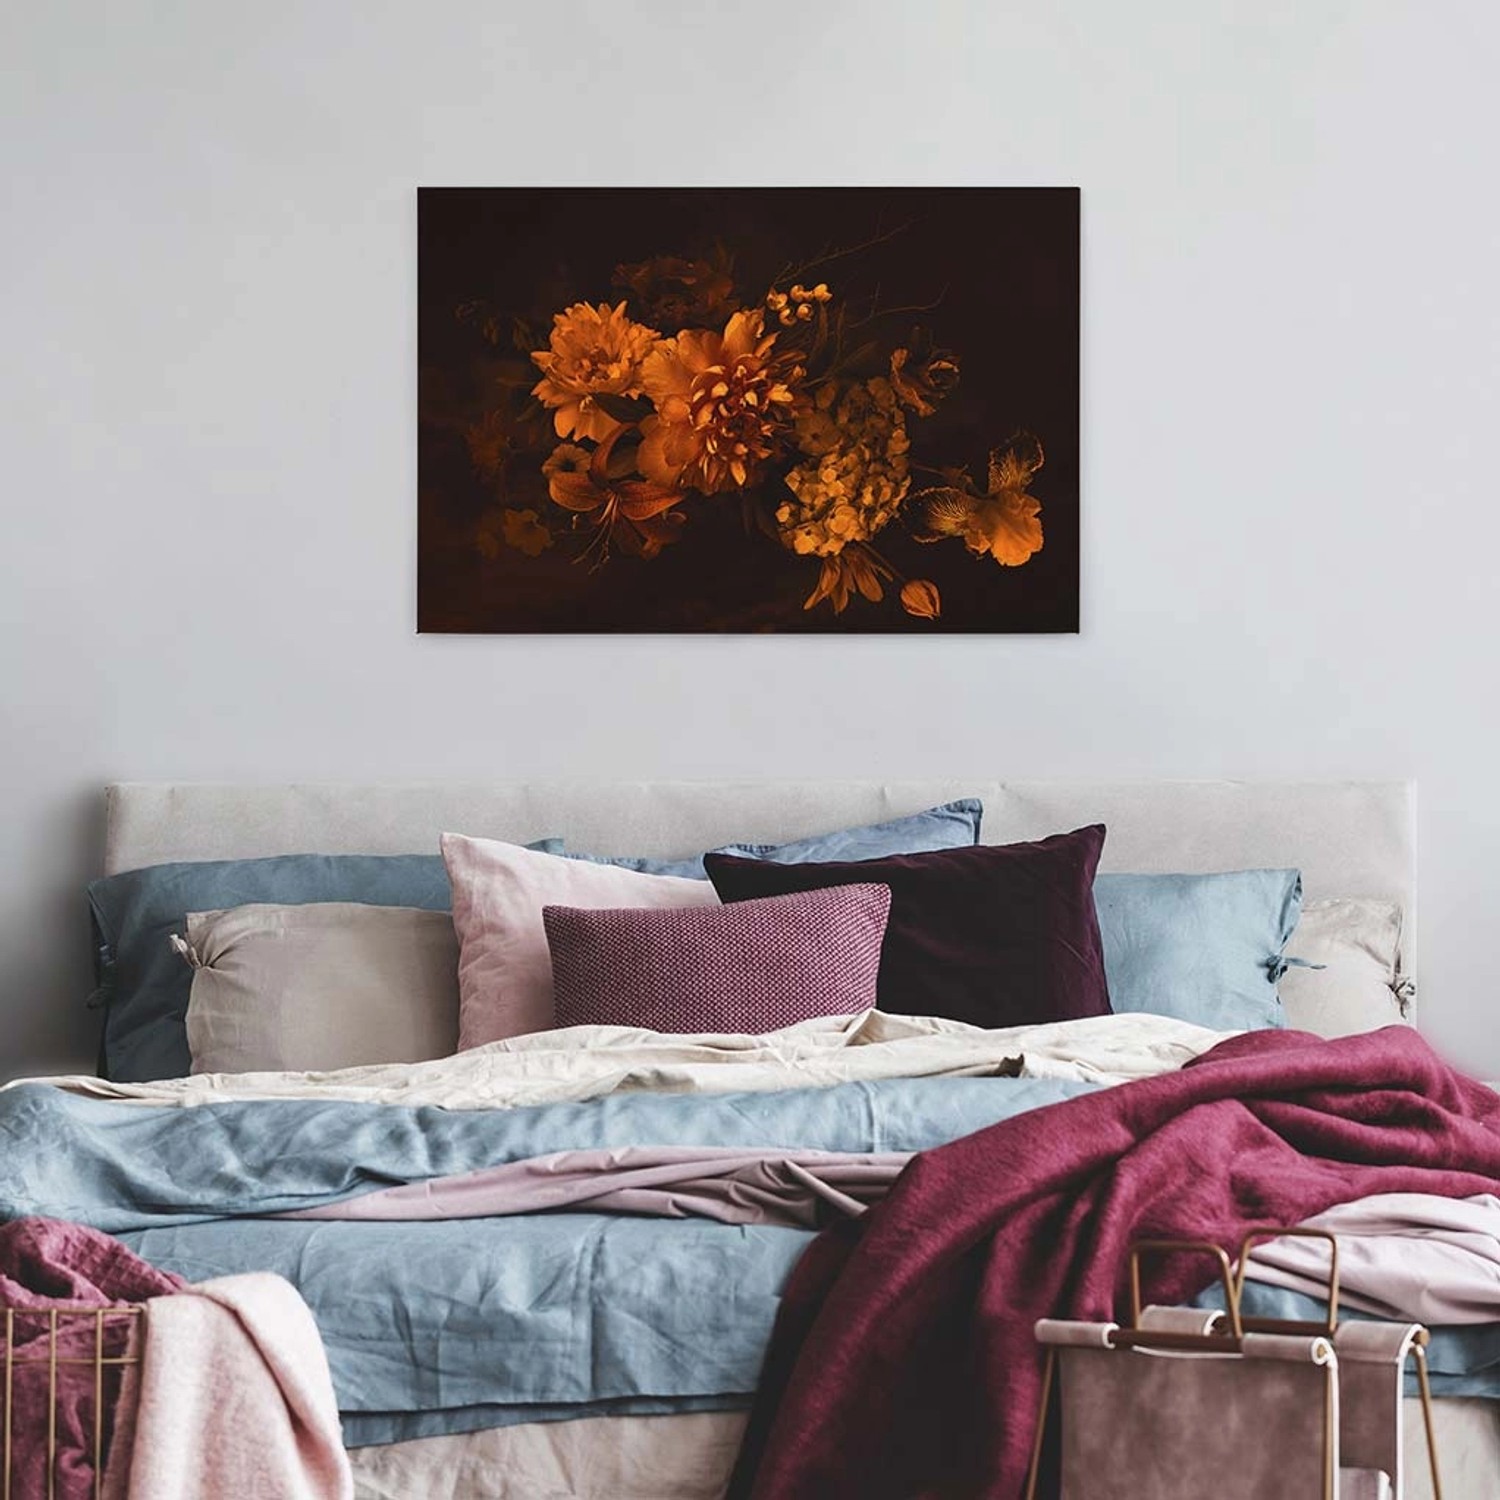 Bricoflor Canvas Bild Mit Herbstblumen In Schwarz Und Orange Vintage Leinwand Mit Hortensie Und Lilie Rosen Wandbild Ide